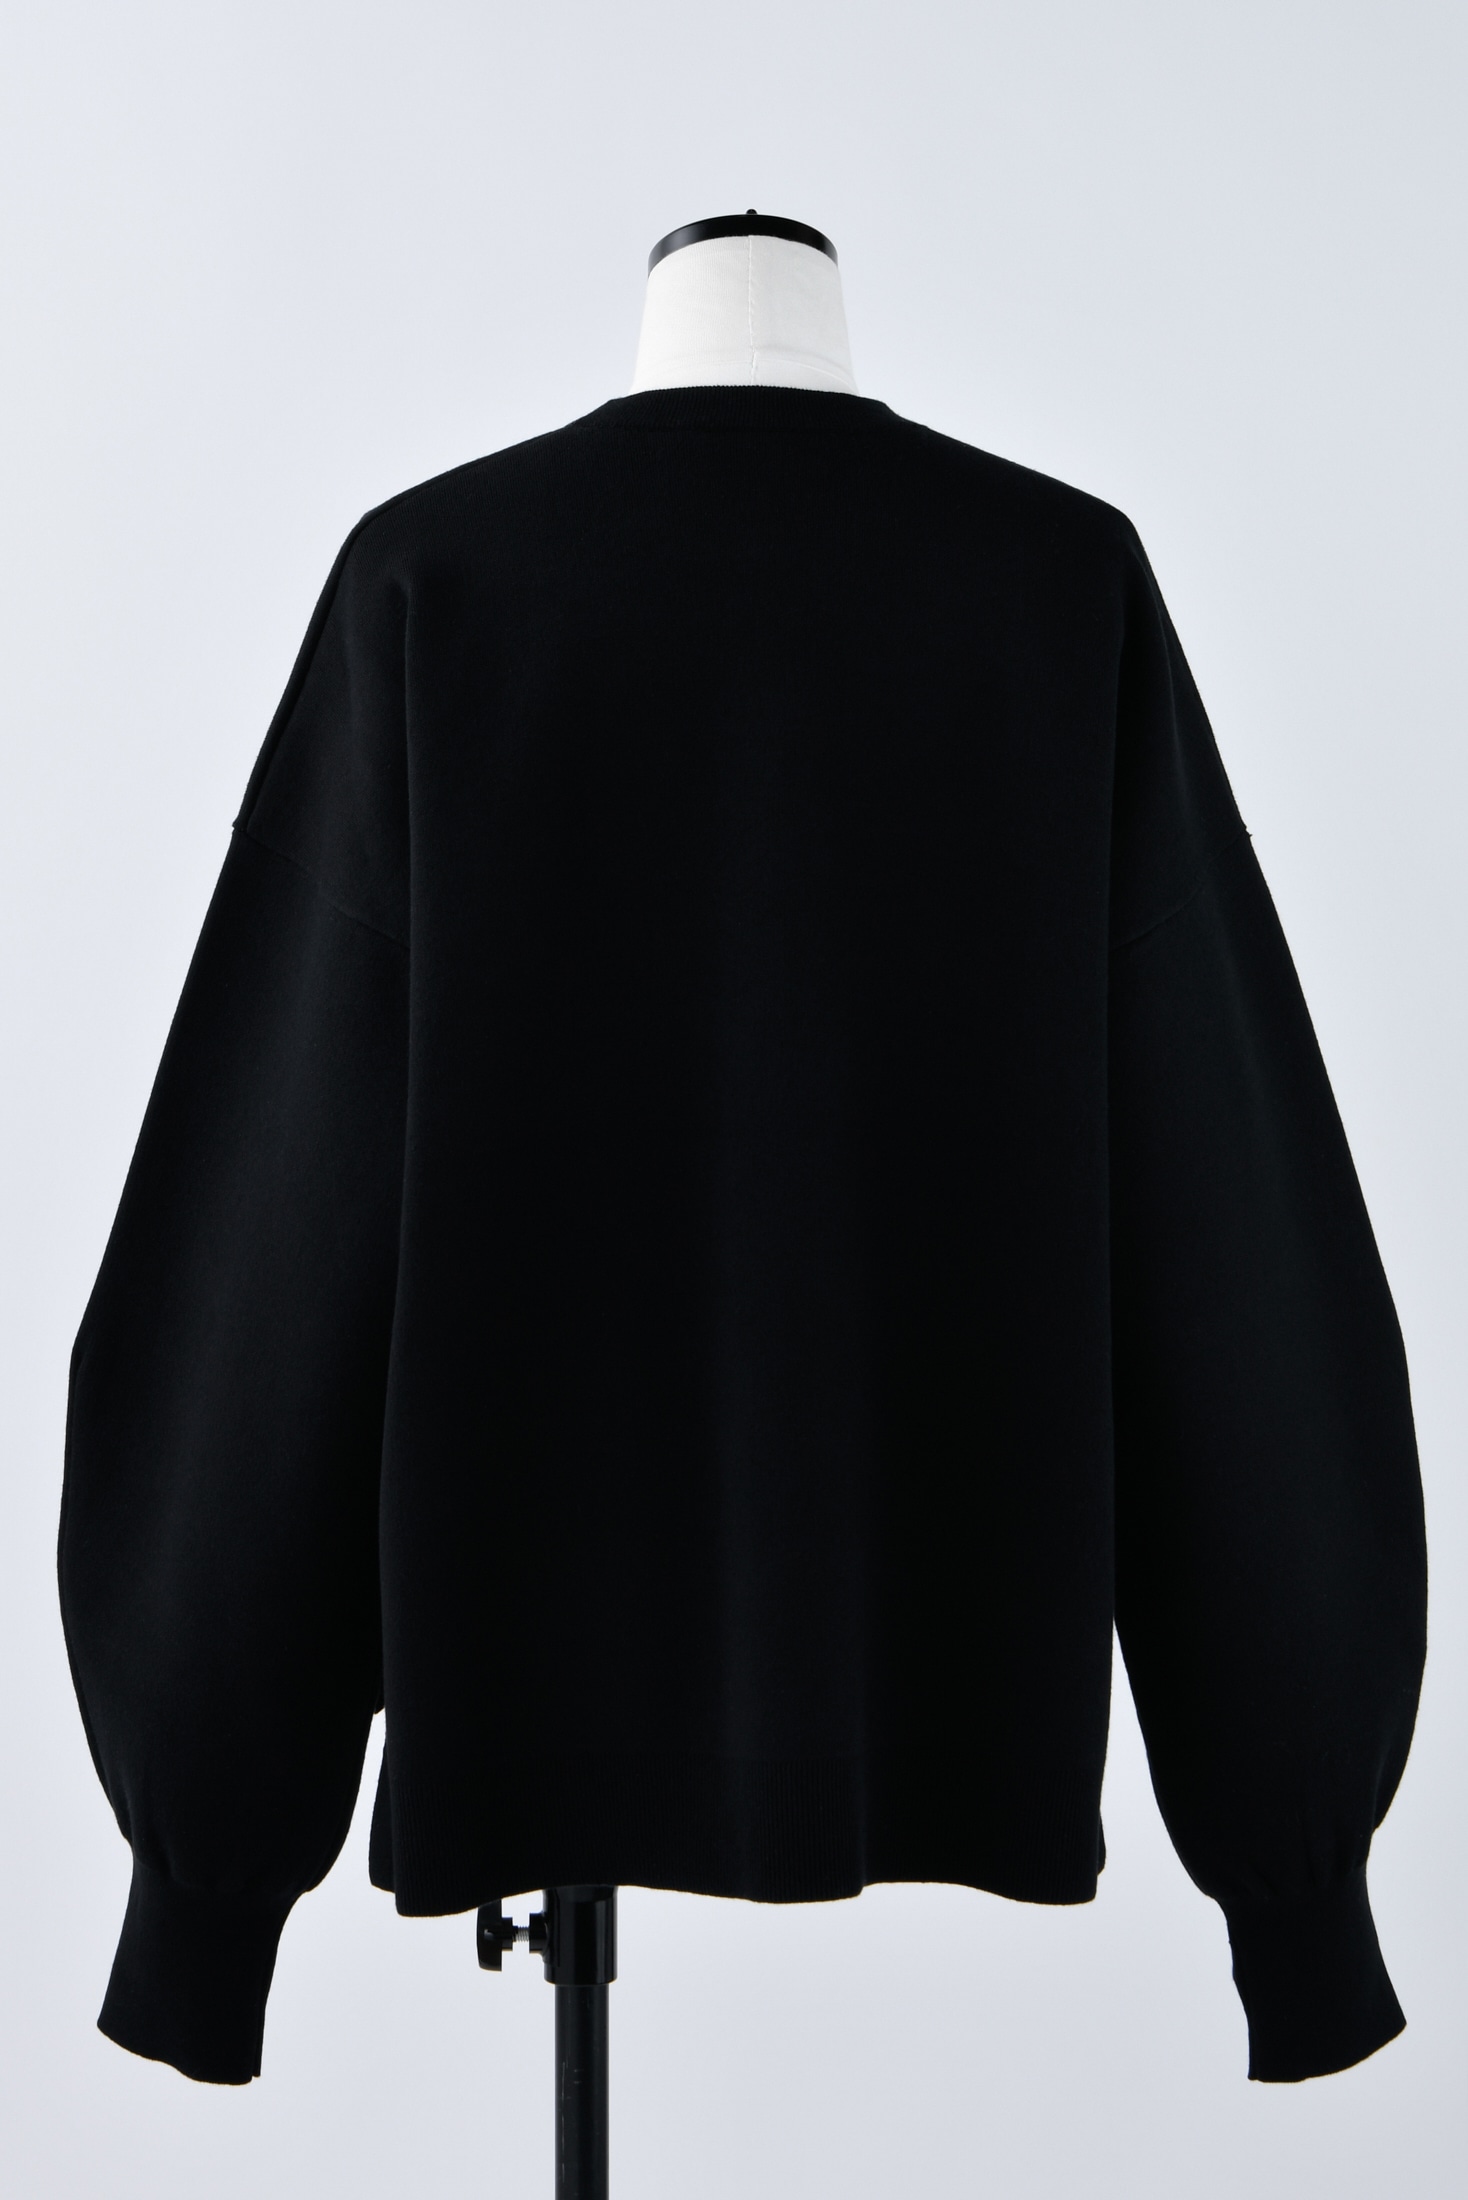 ○新品未使用nagonstans/knit pullover/黒/M size